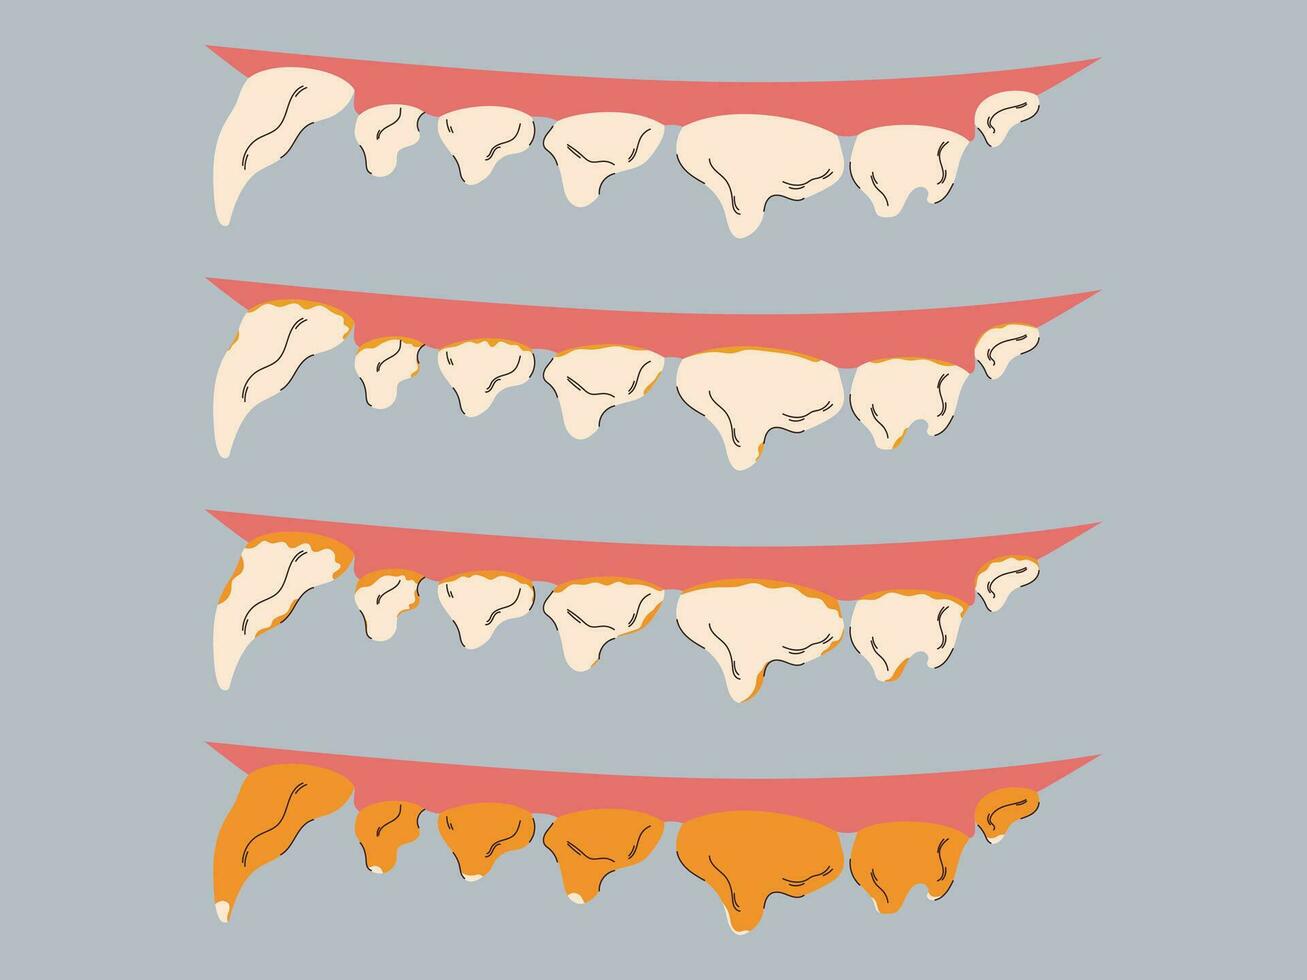 stadier av plack och tartar bildning i hundar. gummi sjukdom förebyggande. hund dental vård begrepp. vektor illustration